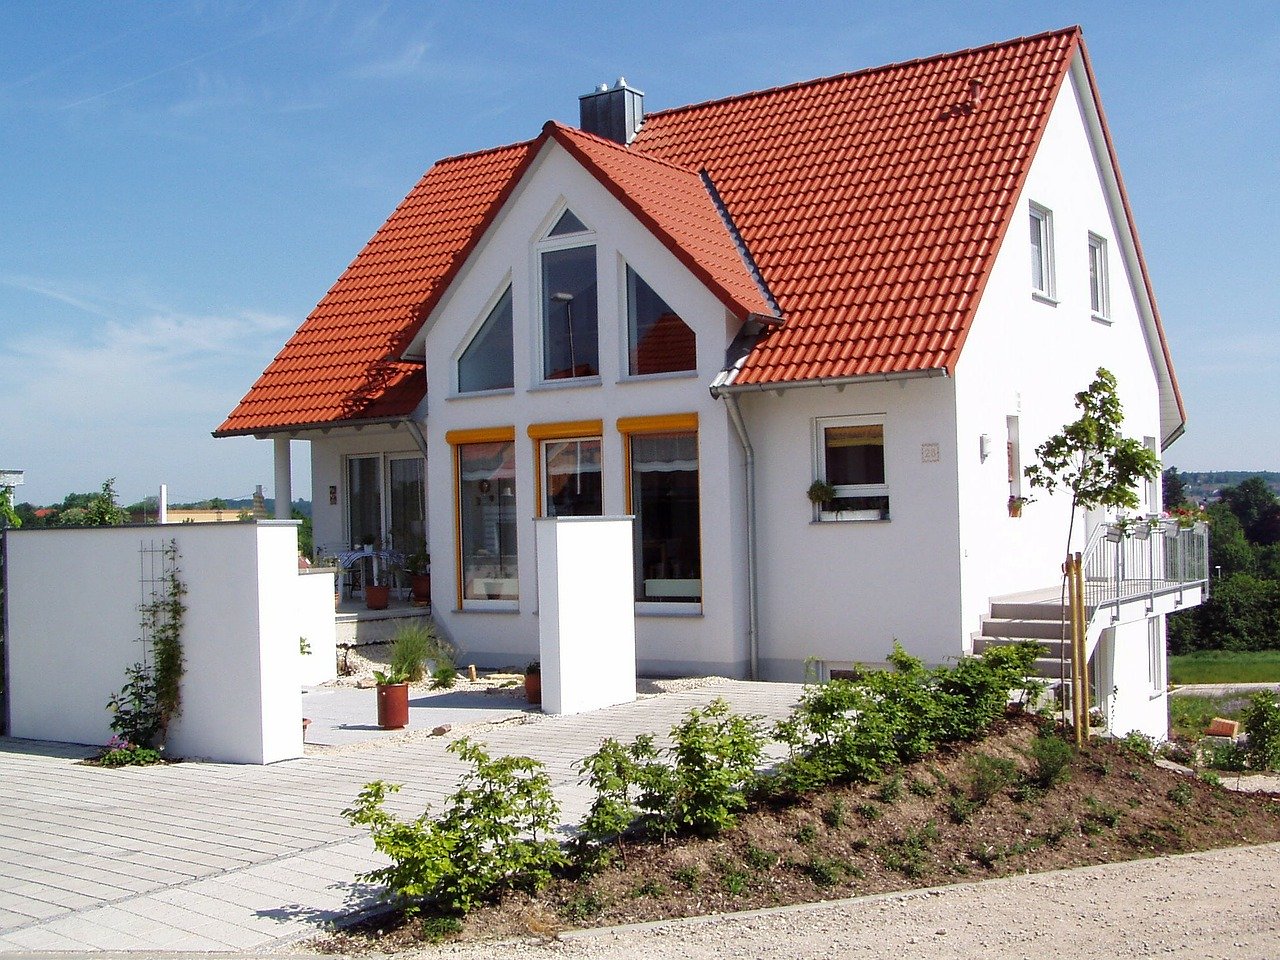 Einfamilienhaus mit einem Satteldach.